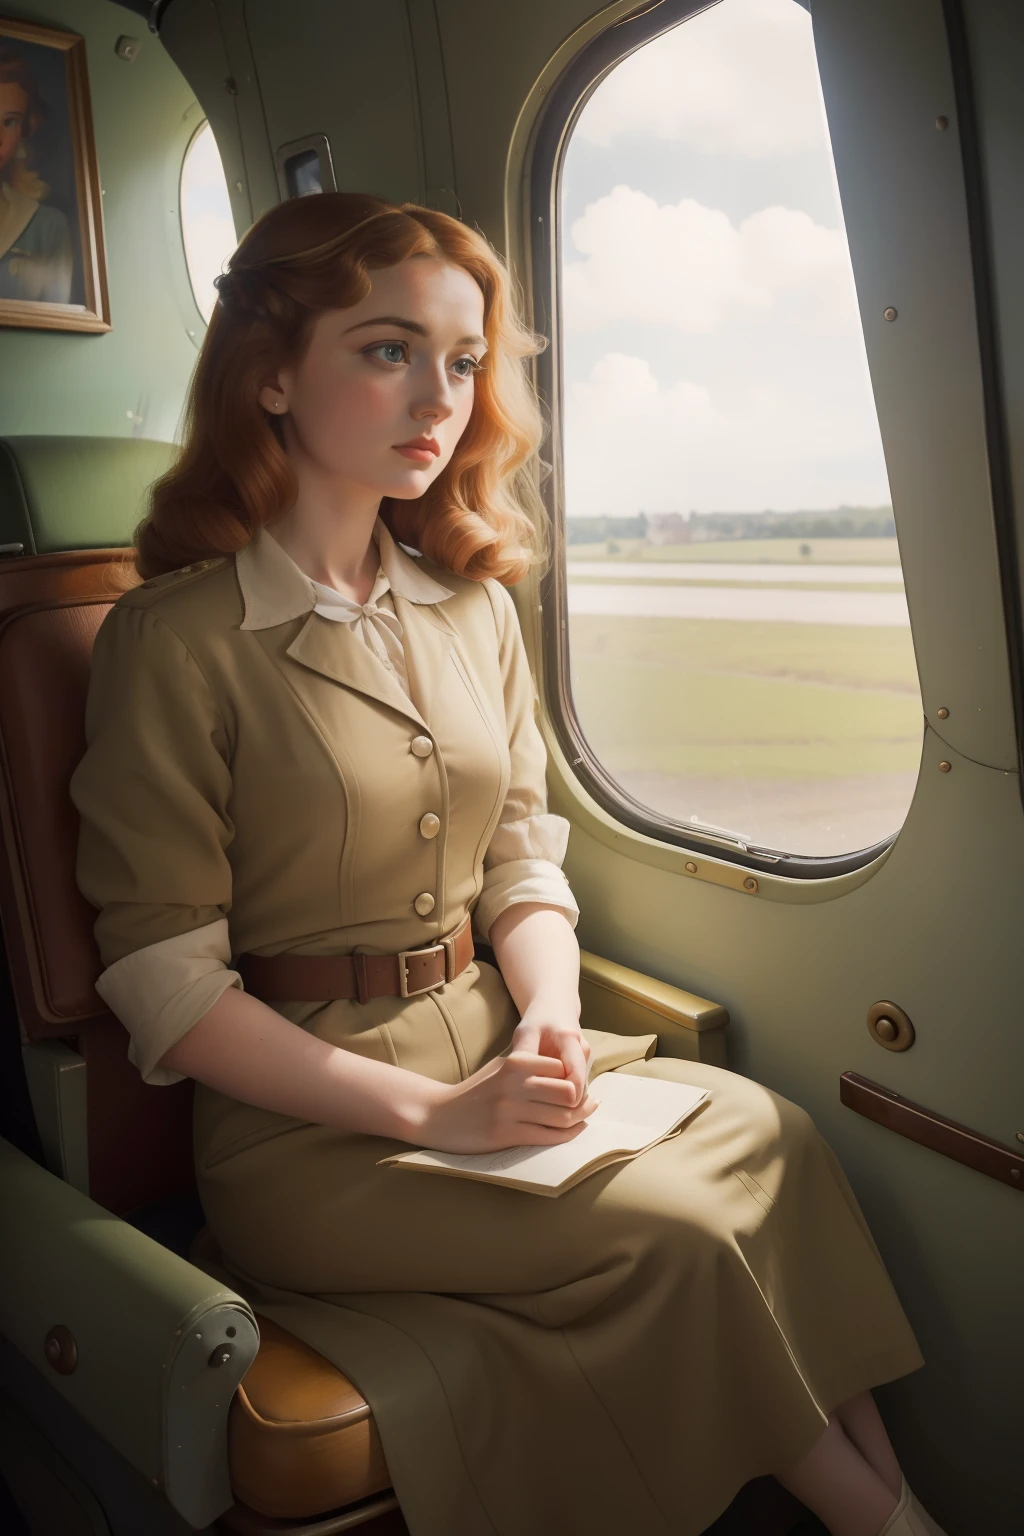 Año: 1944. Ubicación: Francia. Escena prerrafaelita con una francesa con cabello de miel sentada en un pequeño avión pobre, ((aterrorizado)) ((Asustado)) expresión, mirando por la ventana ((Ropa de la década de 1940)) ((peinado de los años 40)) ((En el estilo de "OMITB")) ((estilo cinematográfico))